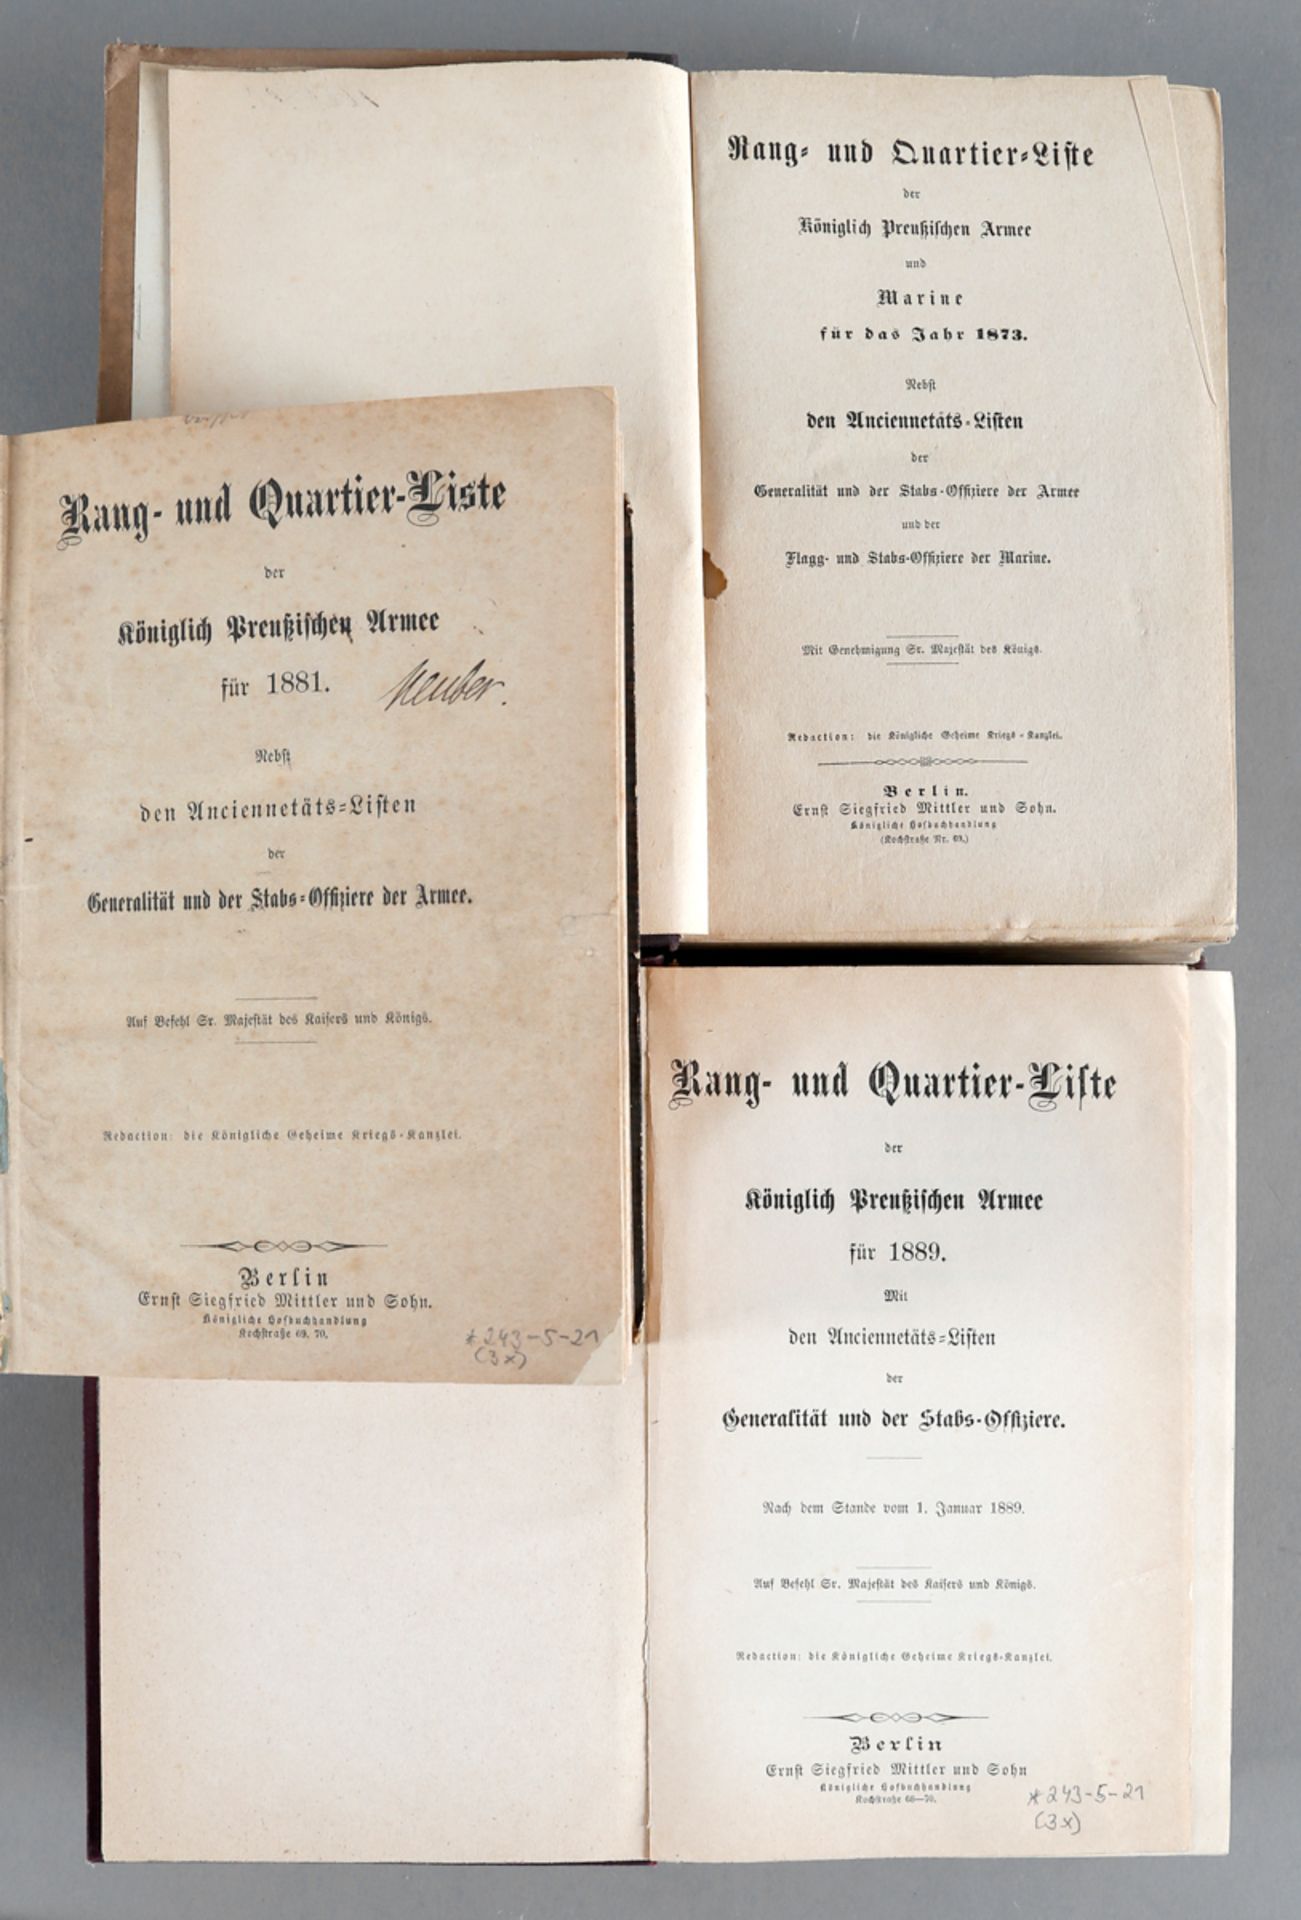 Rang- und Quartierliste der Königlich Preußischen Armee für 1873, 1881 und 1889 (3 Bände)